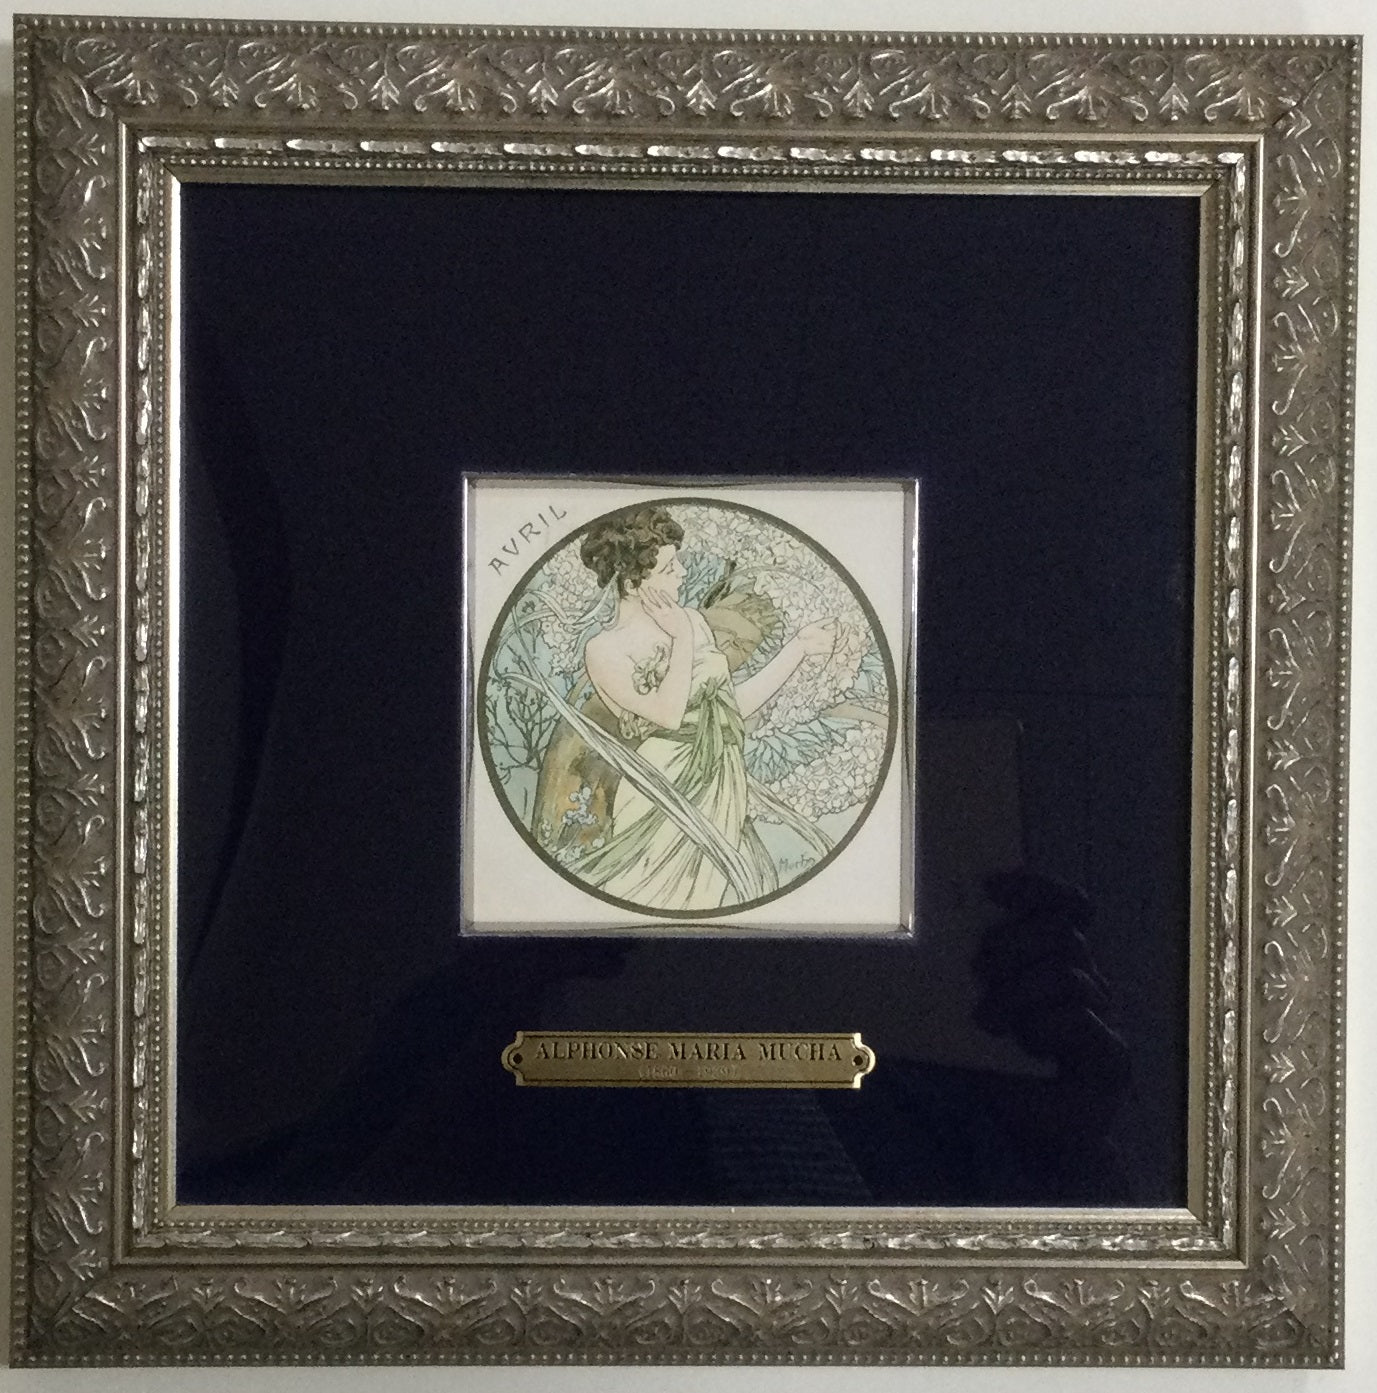 ミュシャ 絵画 4月 リトグラフ 版画 1900年制作 – 芸術百貨店